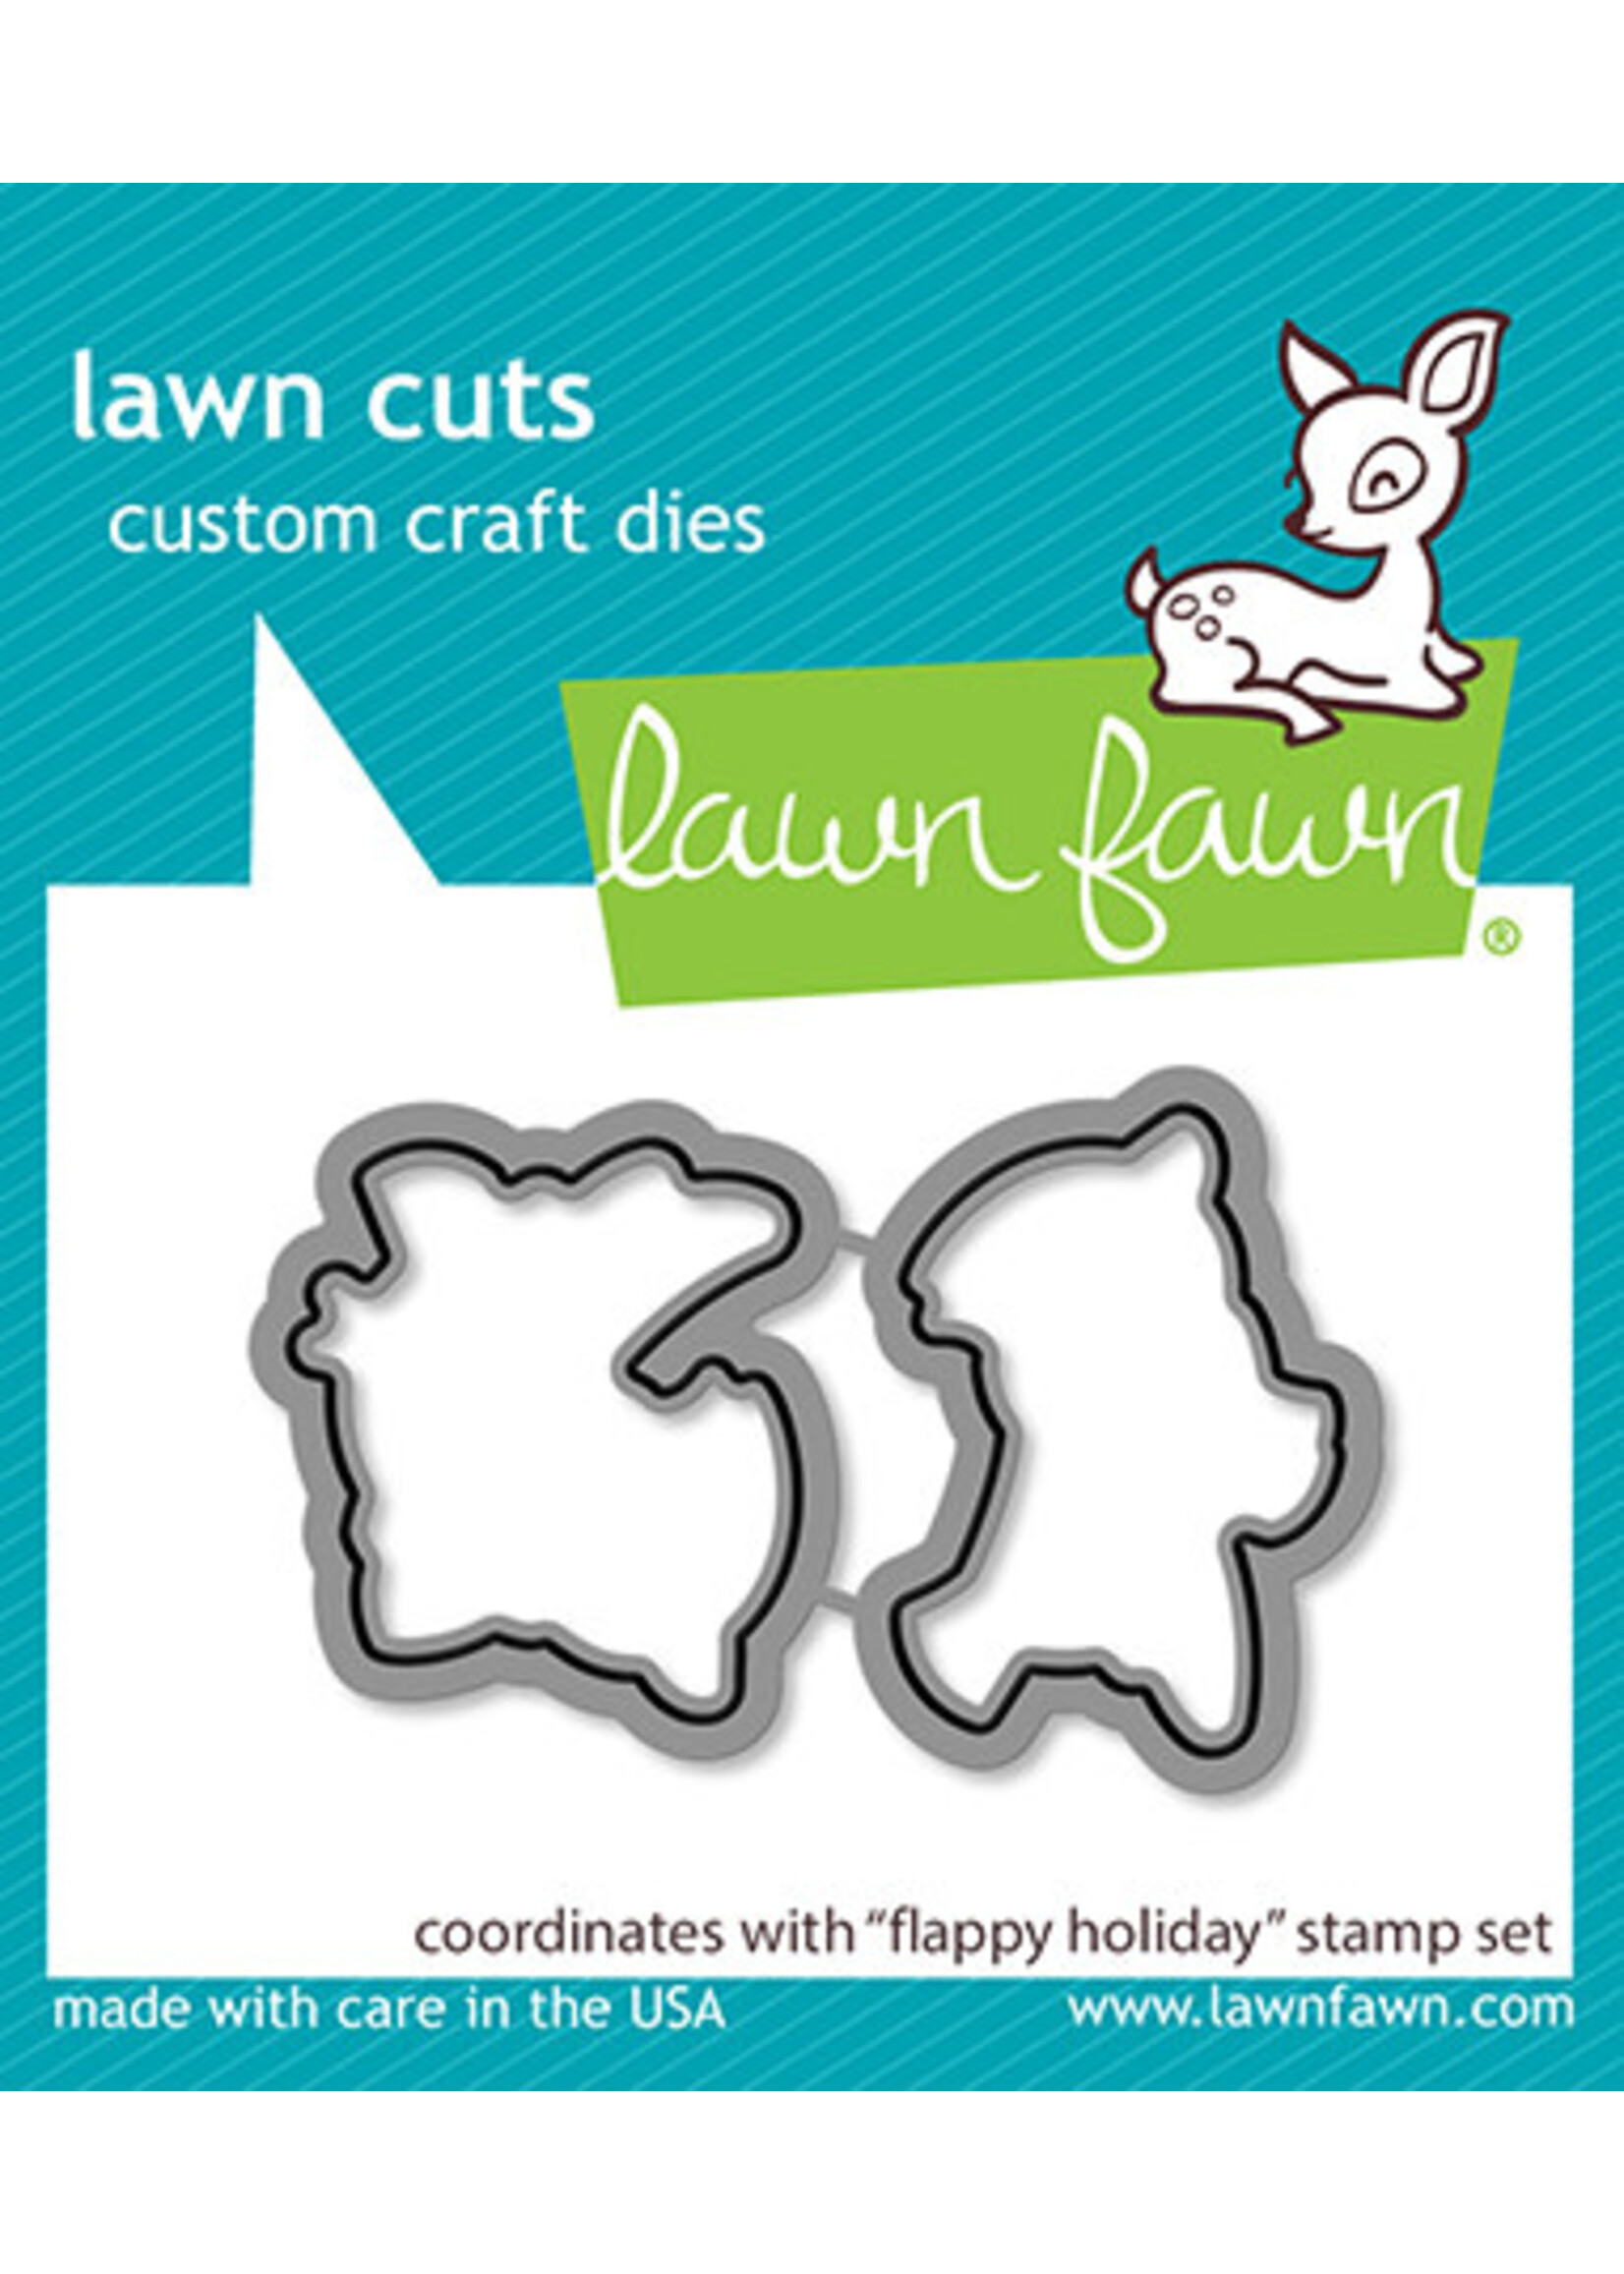 Lawn Fawn flappy holiday lawn cuts die